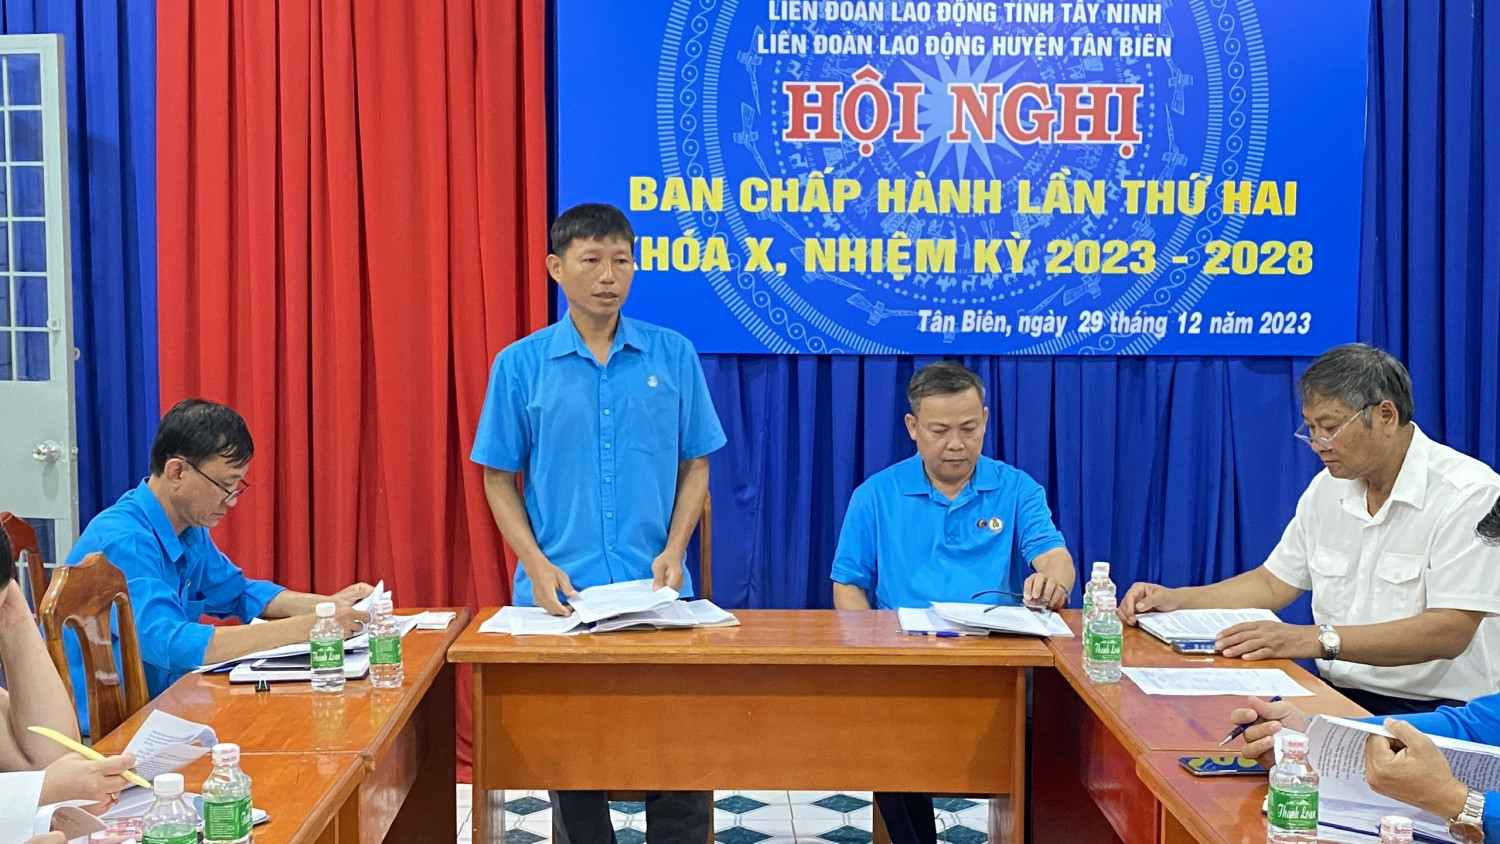 Ban chấp hành LĐLĐ huyện Tân Biên hội nghị lần thứ hai khóa X, nhiệm kỳ 2023-2028